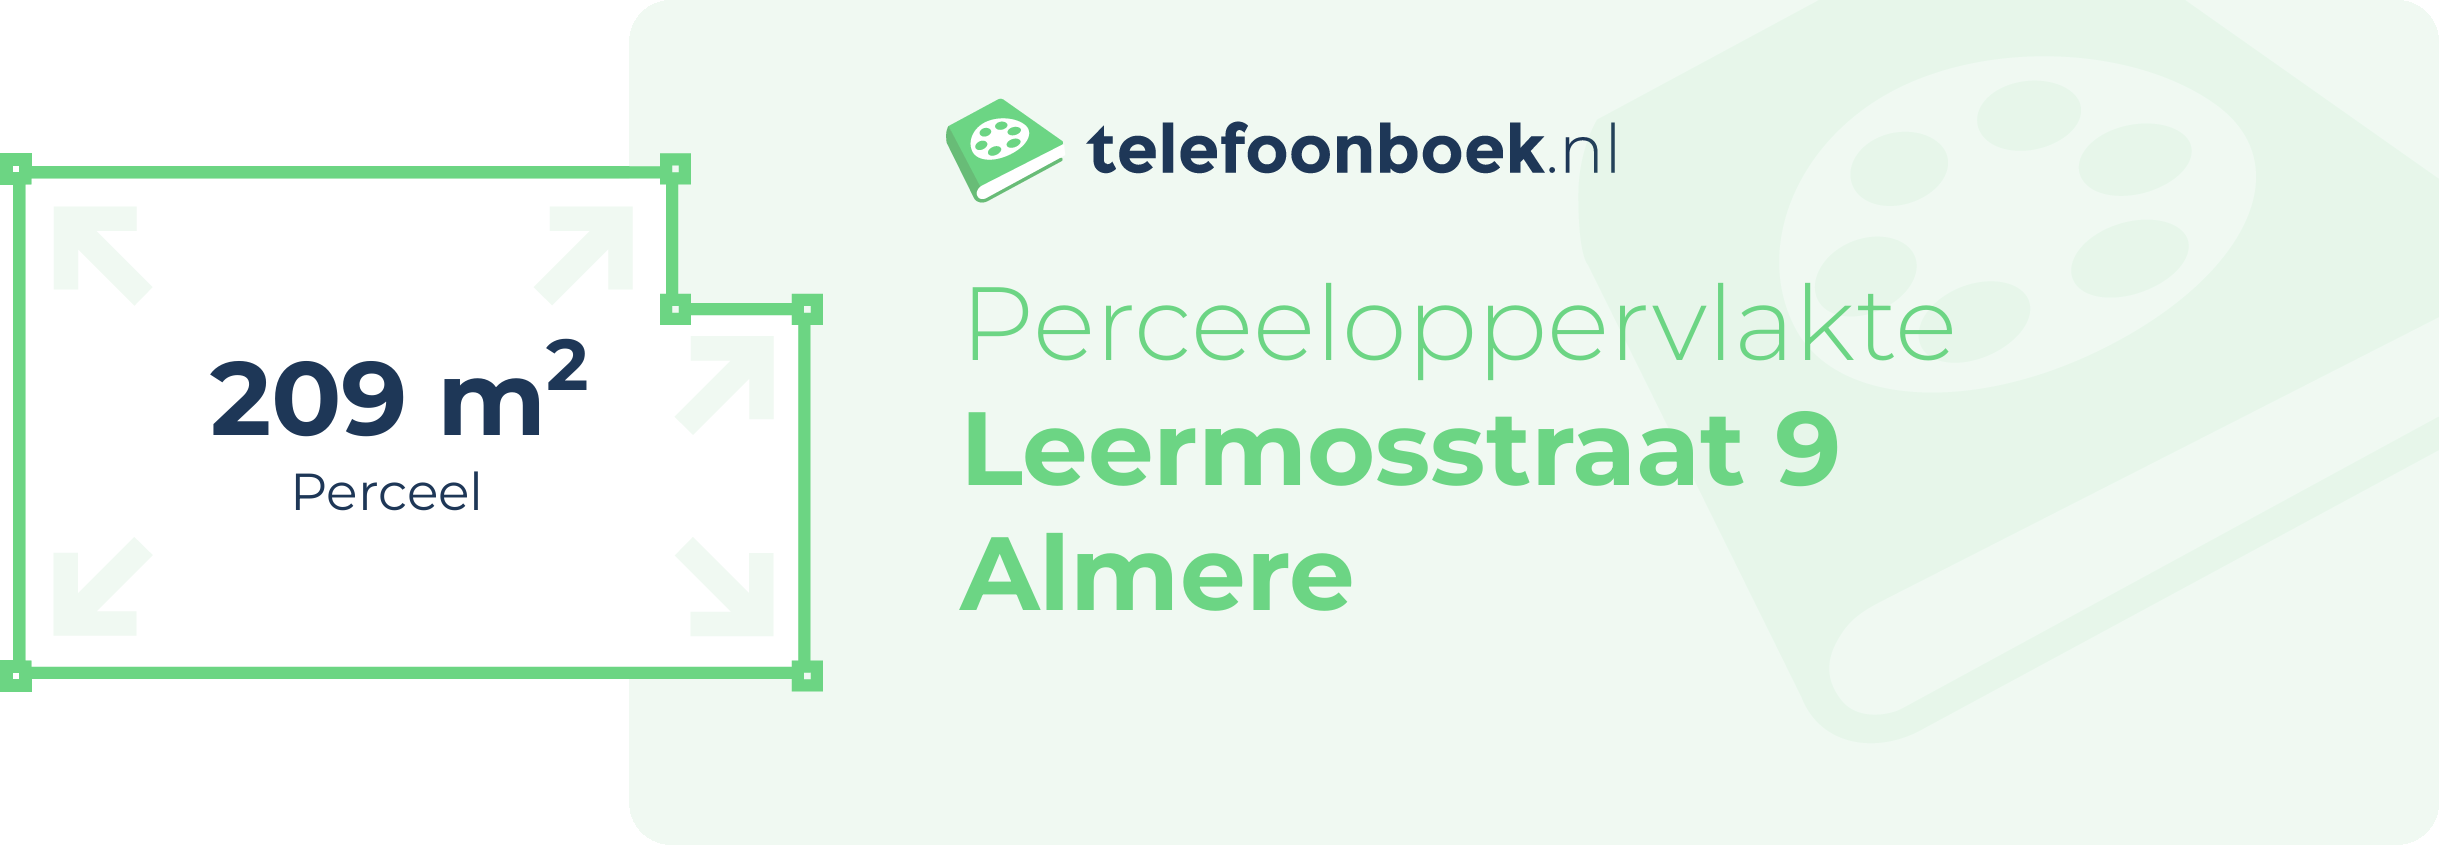 Perceeloppervlakte Leermosstraat 9 Almere